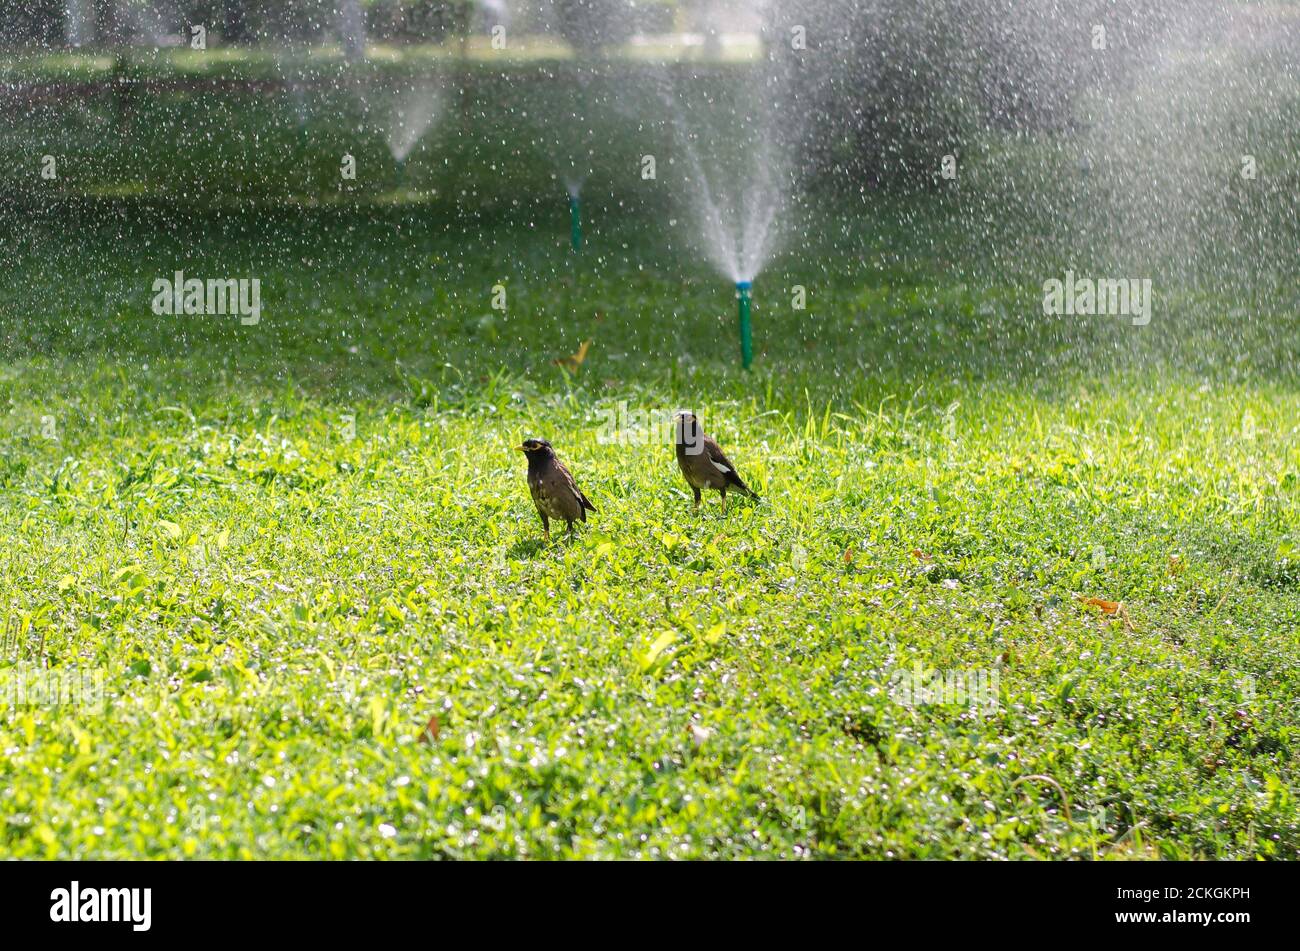 Deux oiseaux mouillés marchent sur l'herbe verte dans la lumière du soleil, autour de la fontaine de pulvérisation Banque D'Images